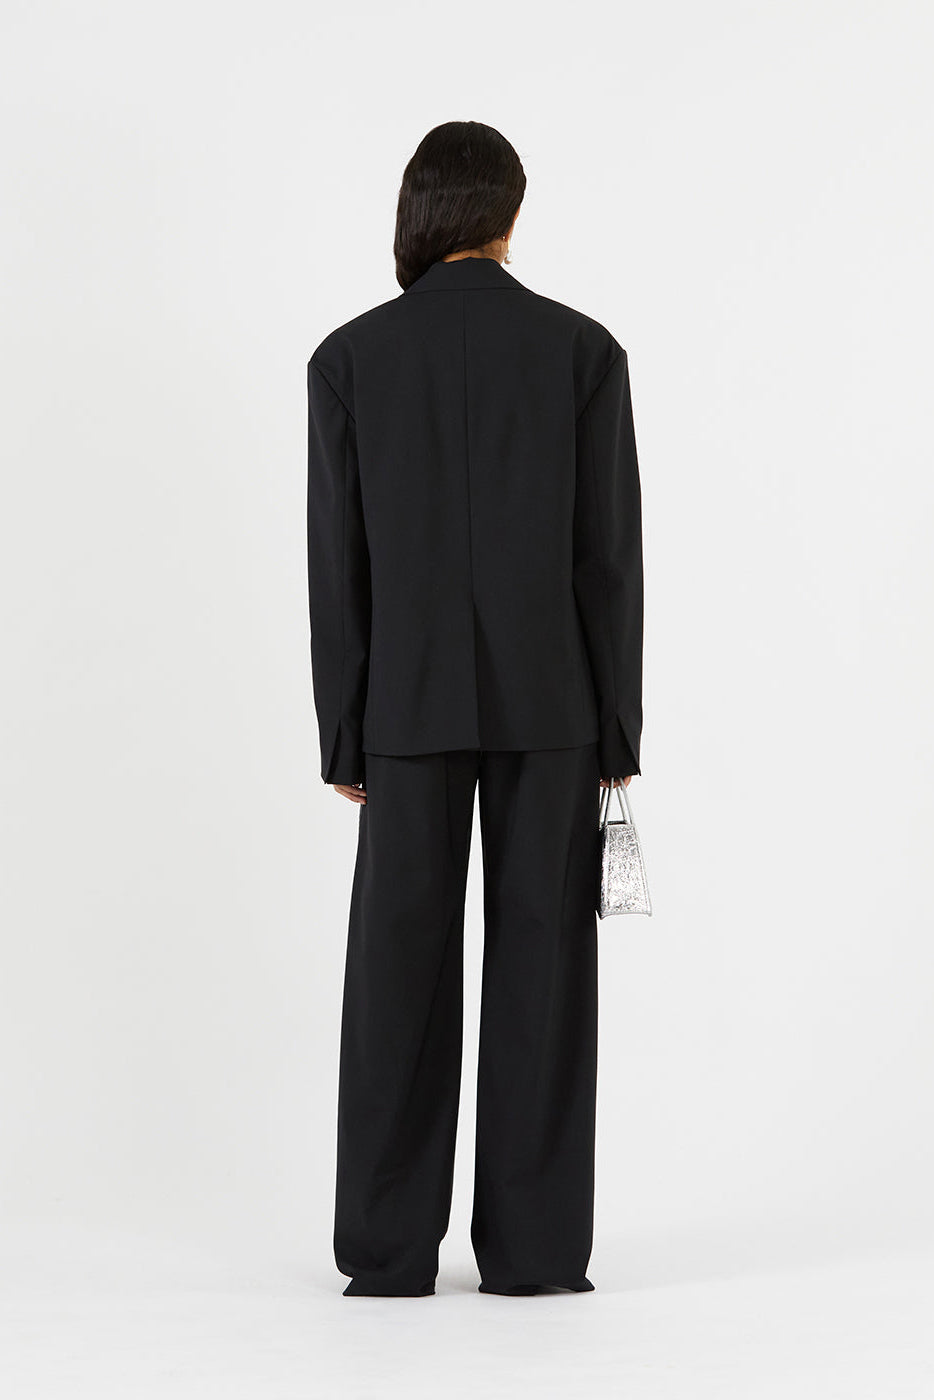 Karyn Jacket in Black Wool Blend Suiting